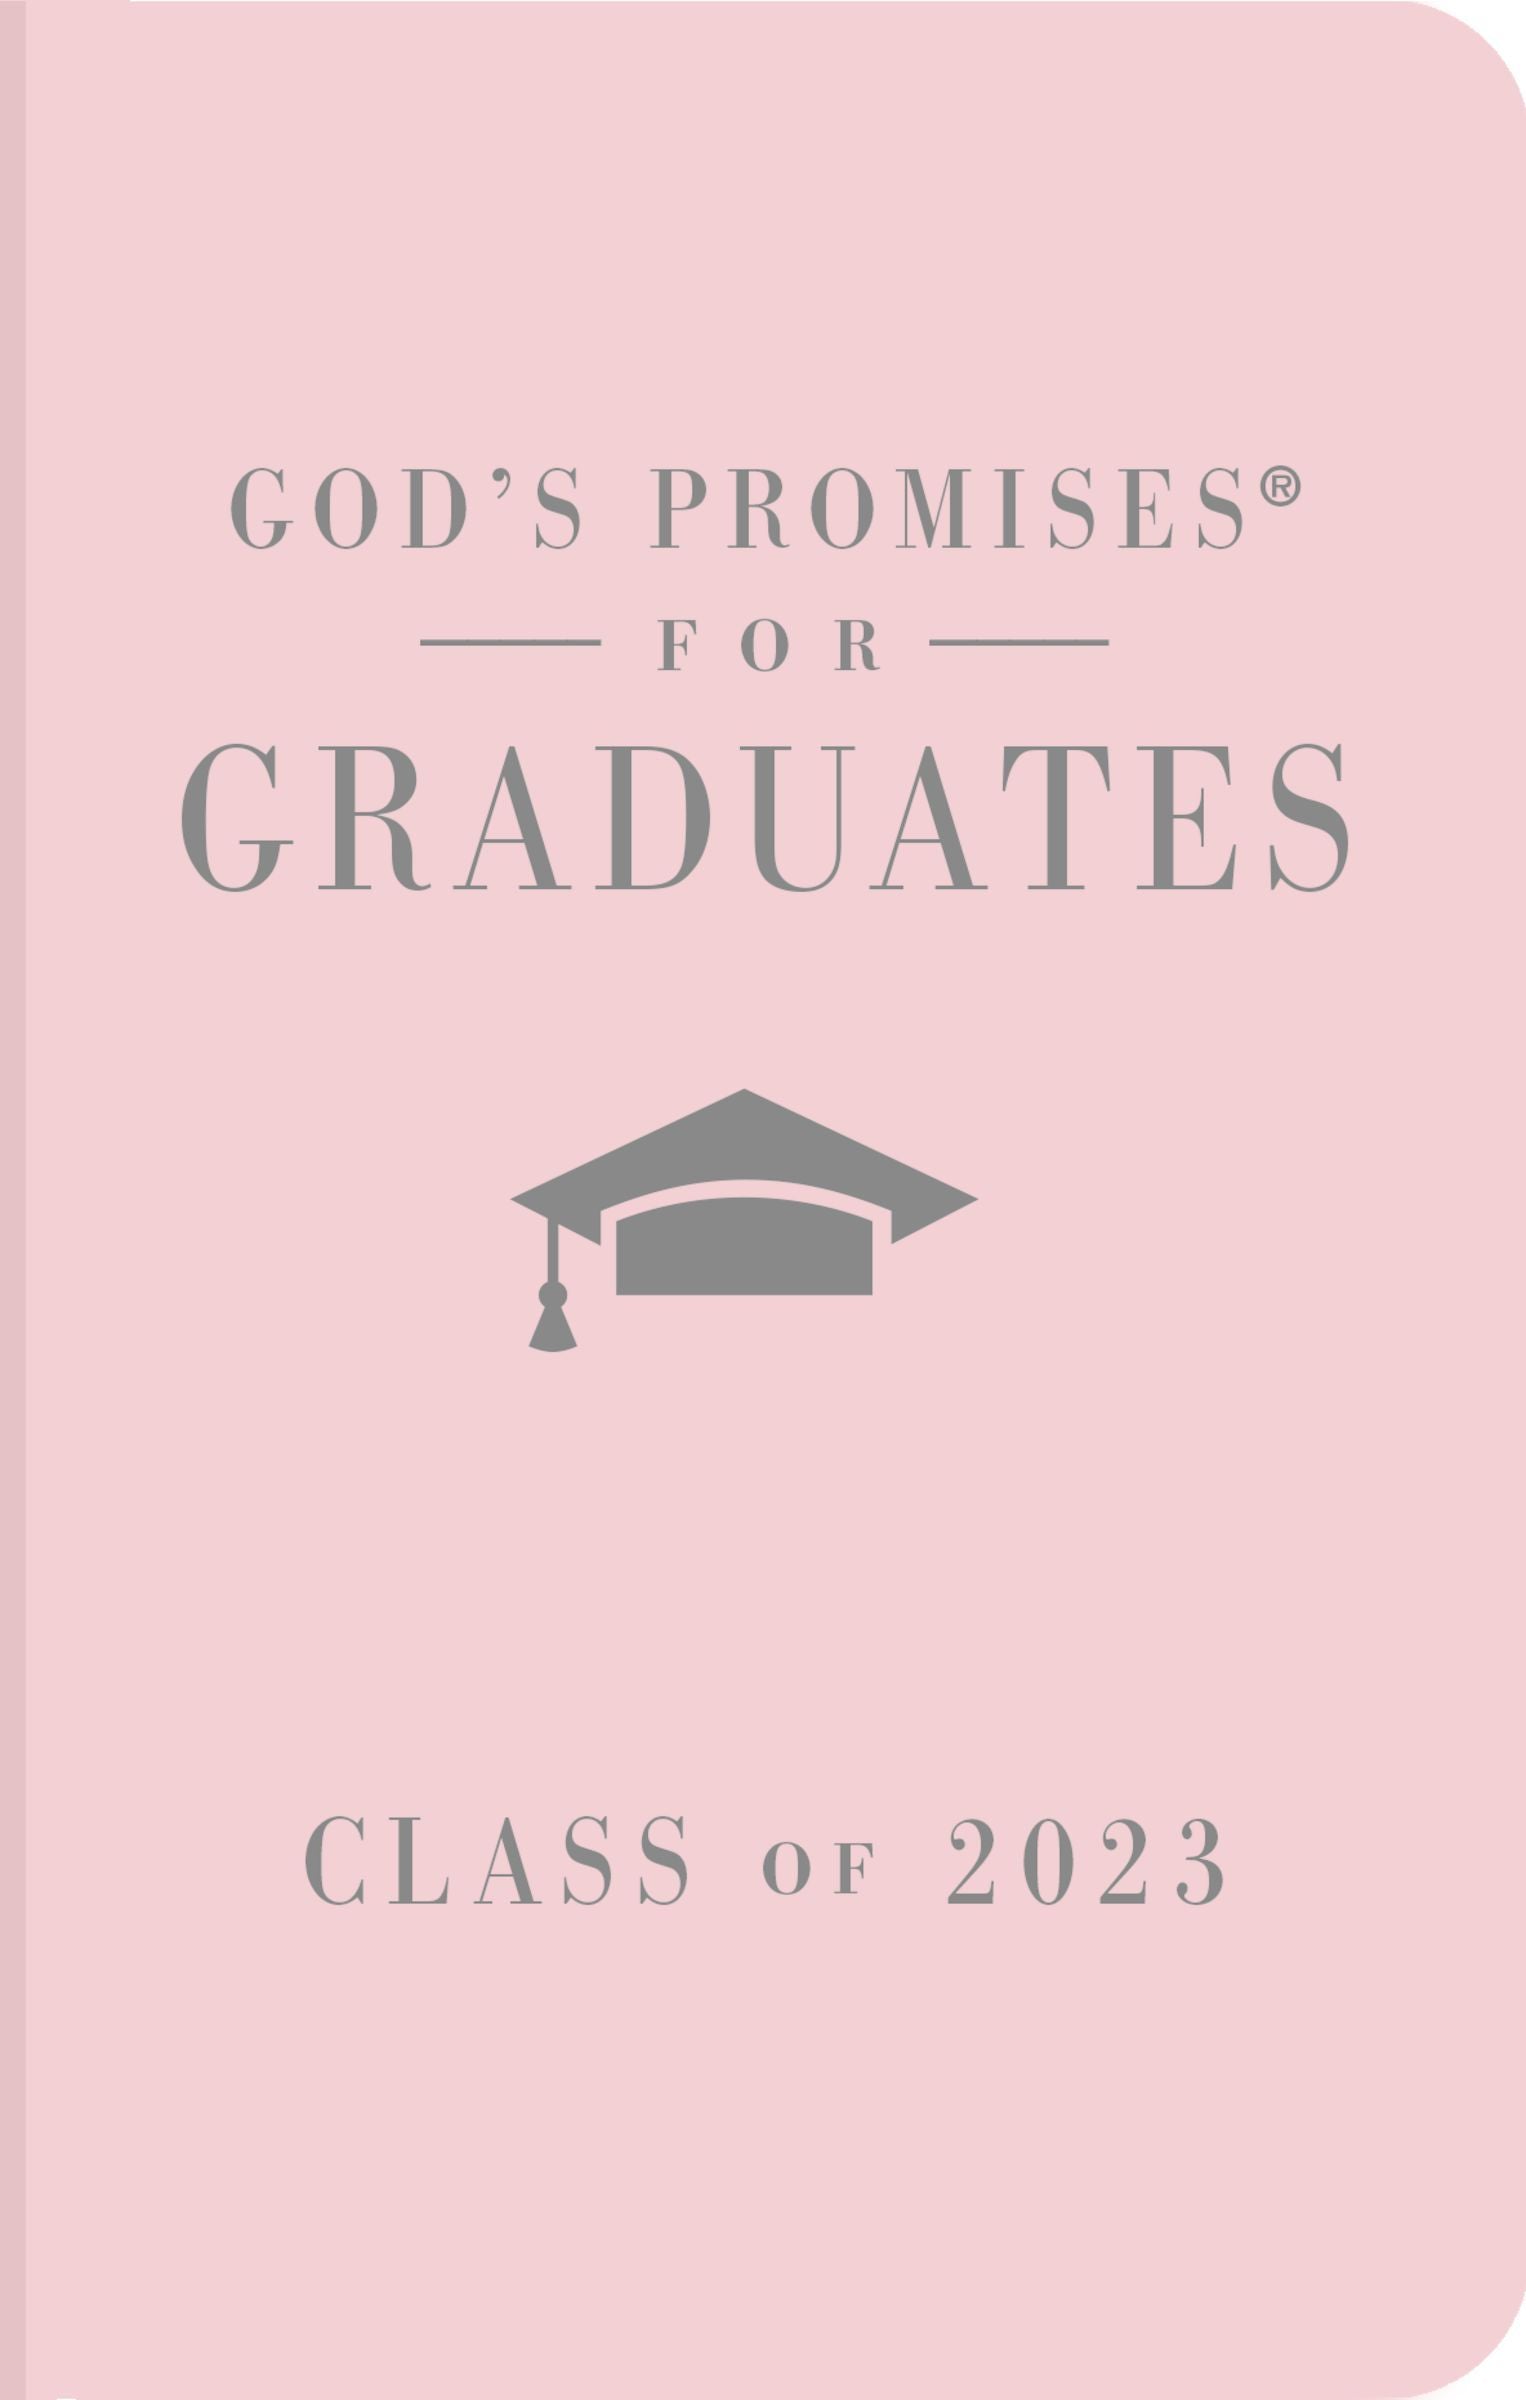 Las promesas de Dios para los graduados 2020 - Marina